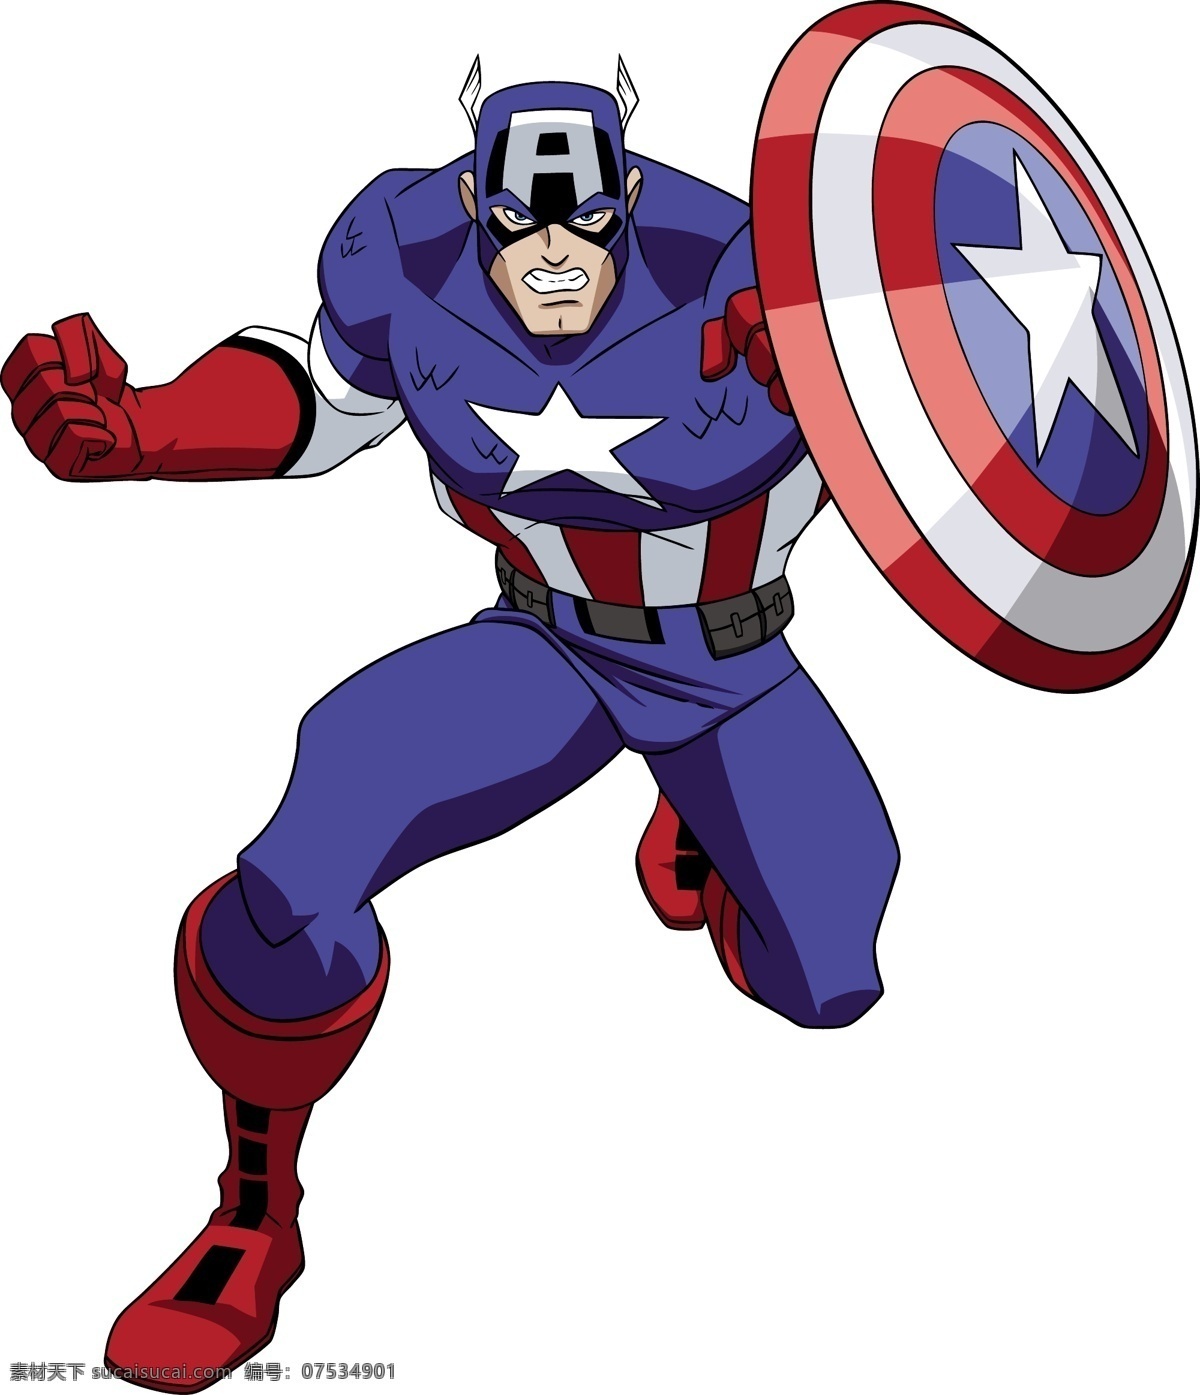 美国队长 美国上尉 超级英雄 复仇者 惊奇漫画 卡通形象 其他人物 矢量人物 矢量